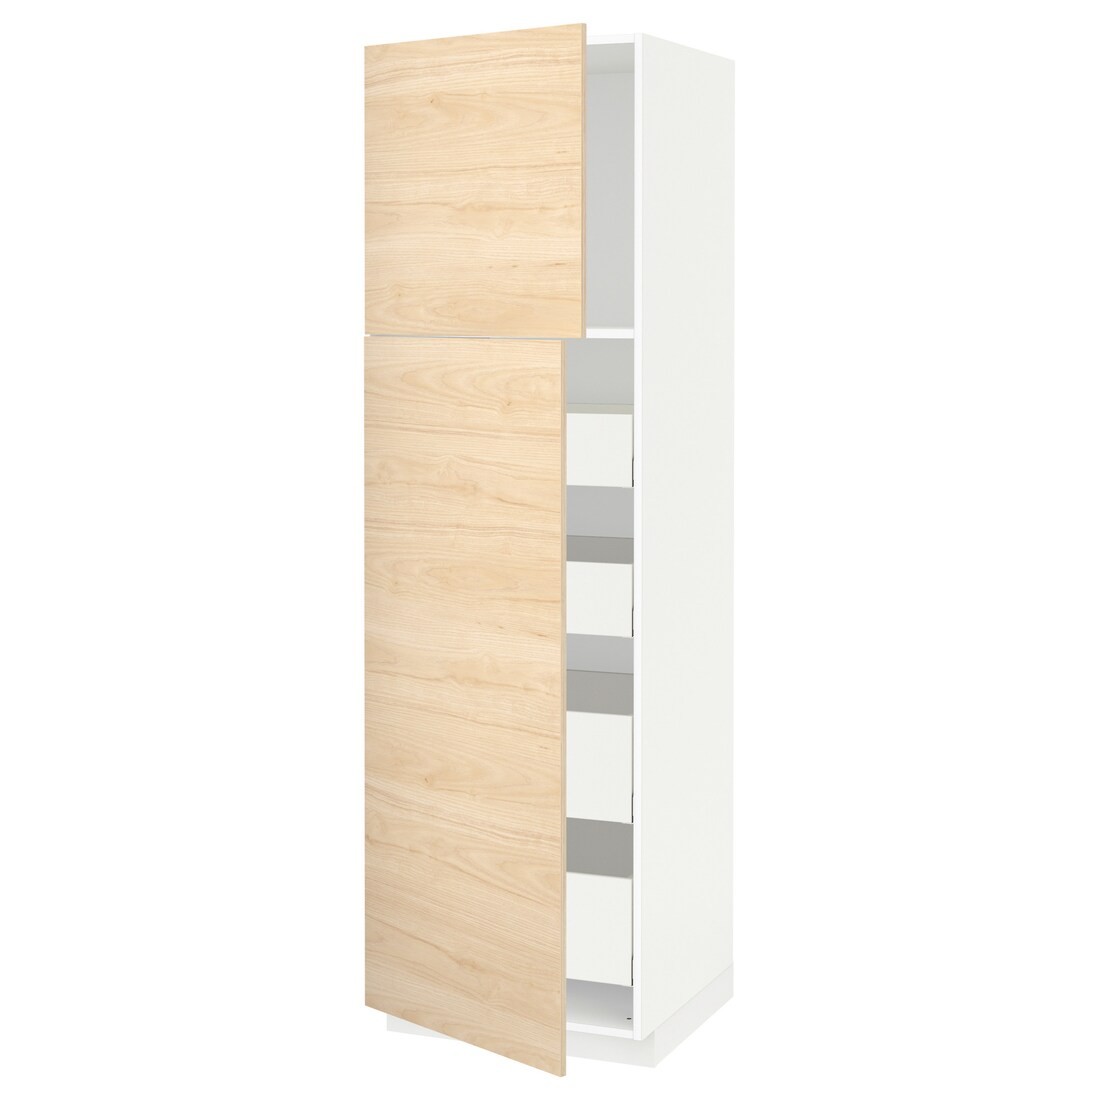 IKEA METOD МЕТОД / MAXIMERA МАКСИМЕРА Шкаф высокий 2 двери / 4 ящика, белый / Askersund узор светлый ясень, 60x60x200 см 29457598 | 294.575.98